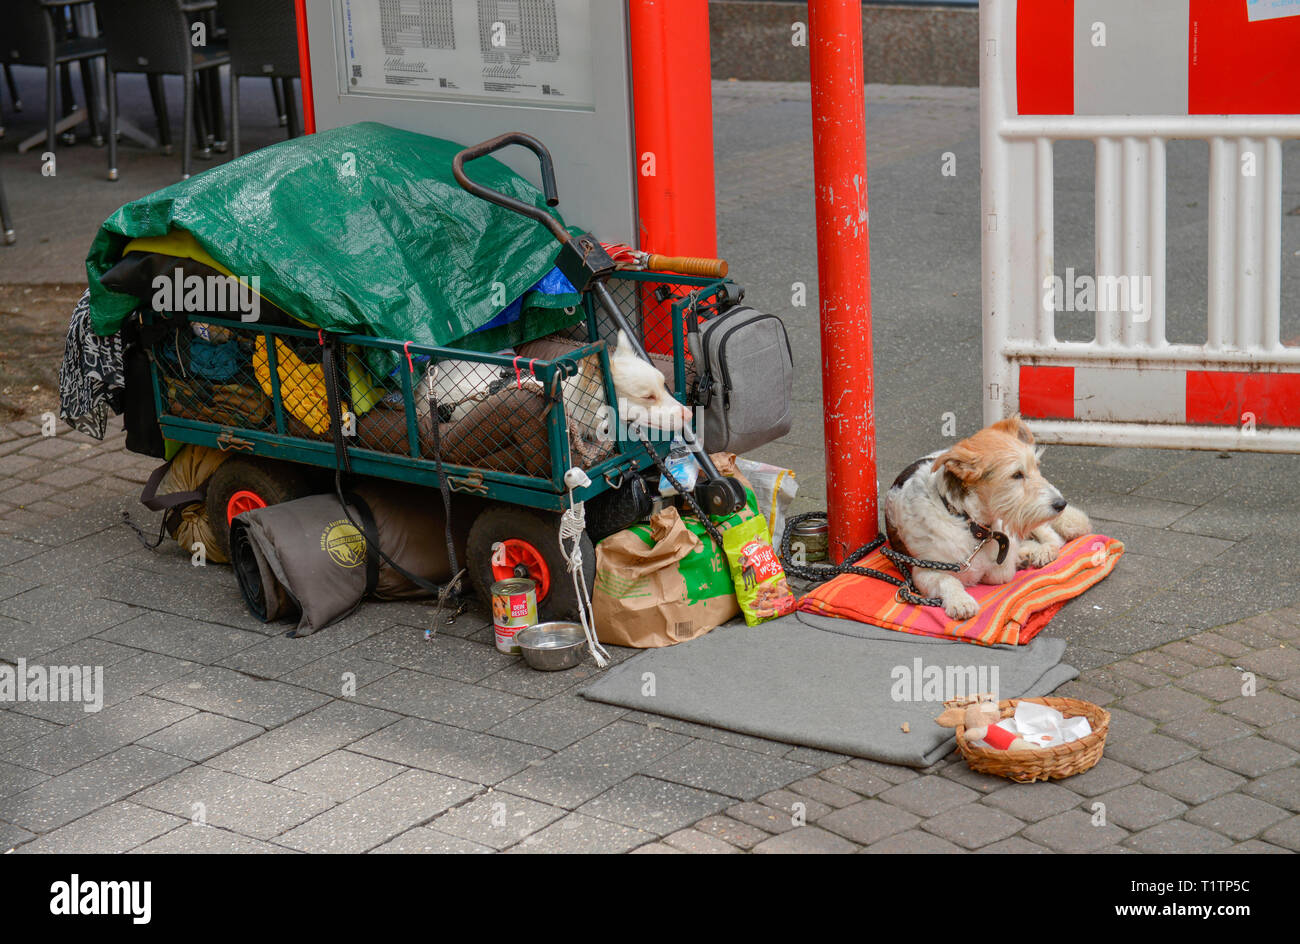 Hunde odachlos, Hohe Strasse, Koeln, Nordrhein-Westfalen, Deutschland Stock Photo